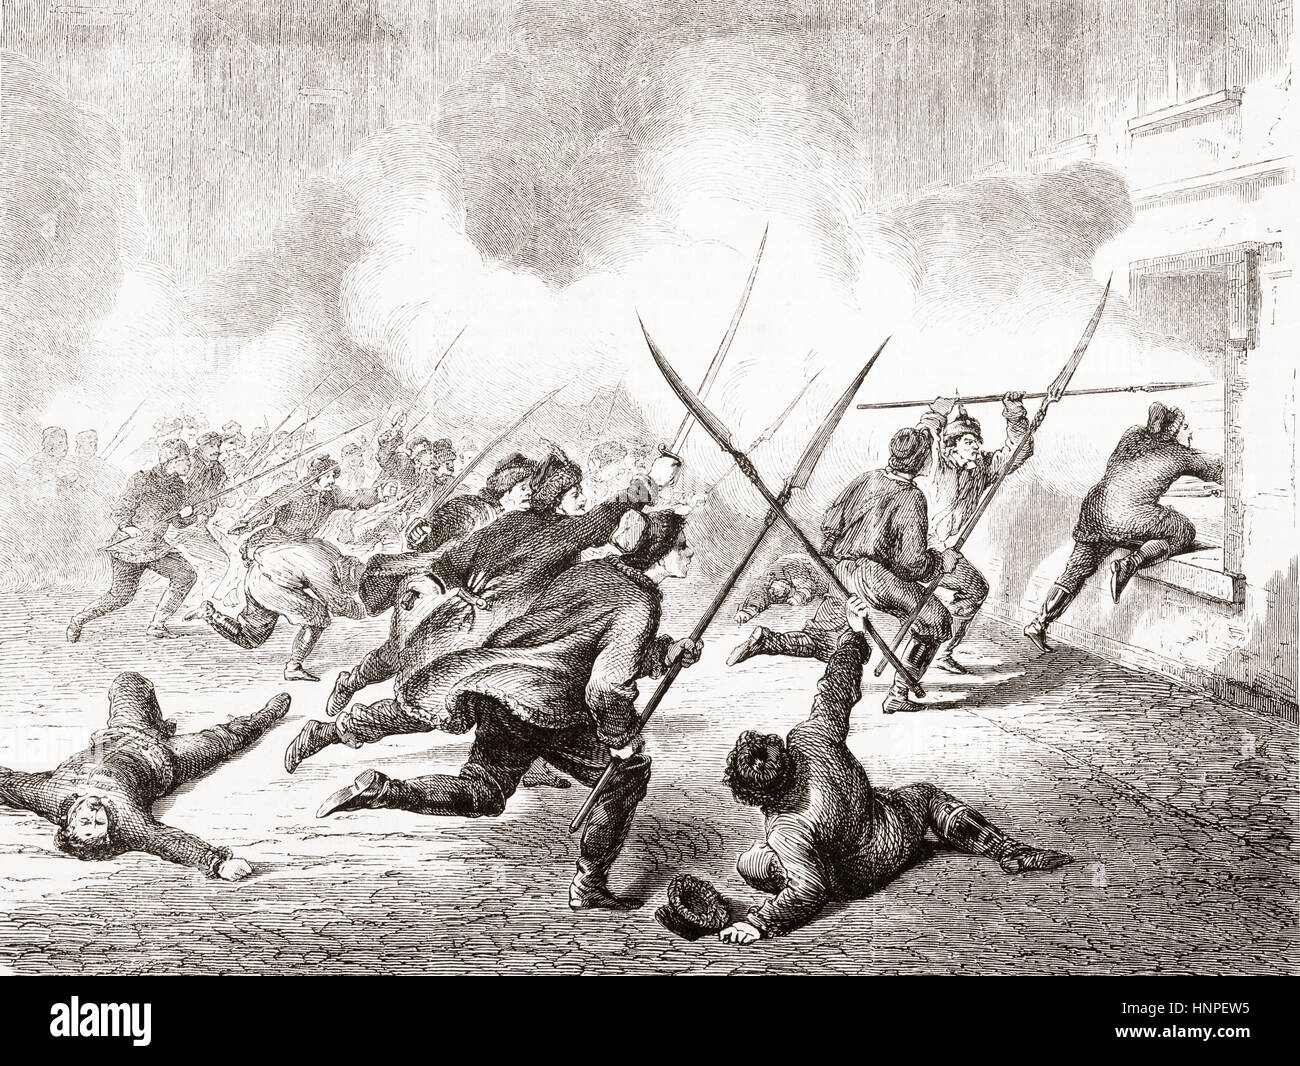 Un distacco del corpo Chmielinski perseguendo i russi nel villaggio di Ponik, Polonia durante la rivolta di gennaio del 1863. Da L'Univers illustre, pubblicato a giugno 1863 Foto Stock